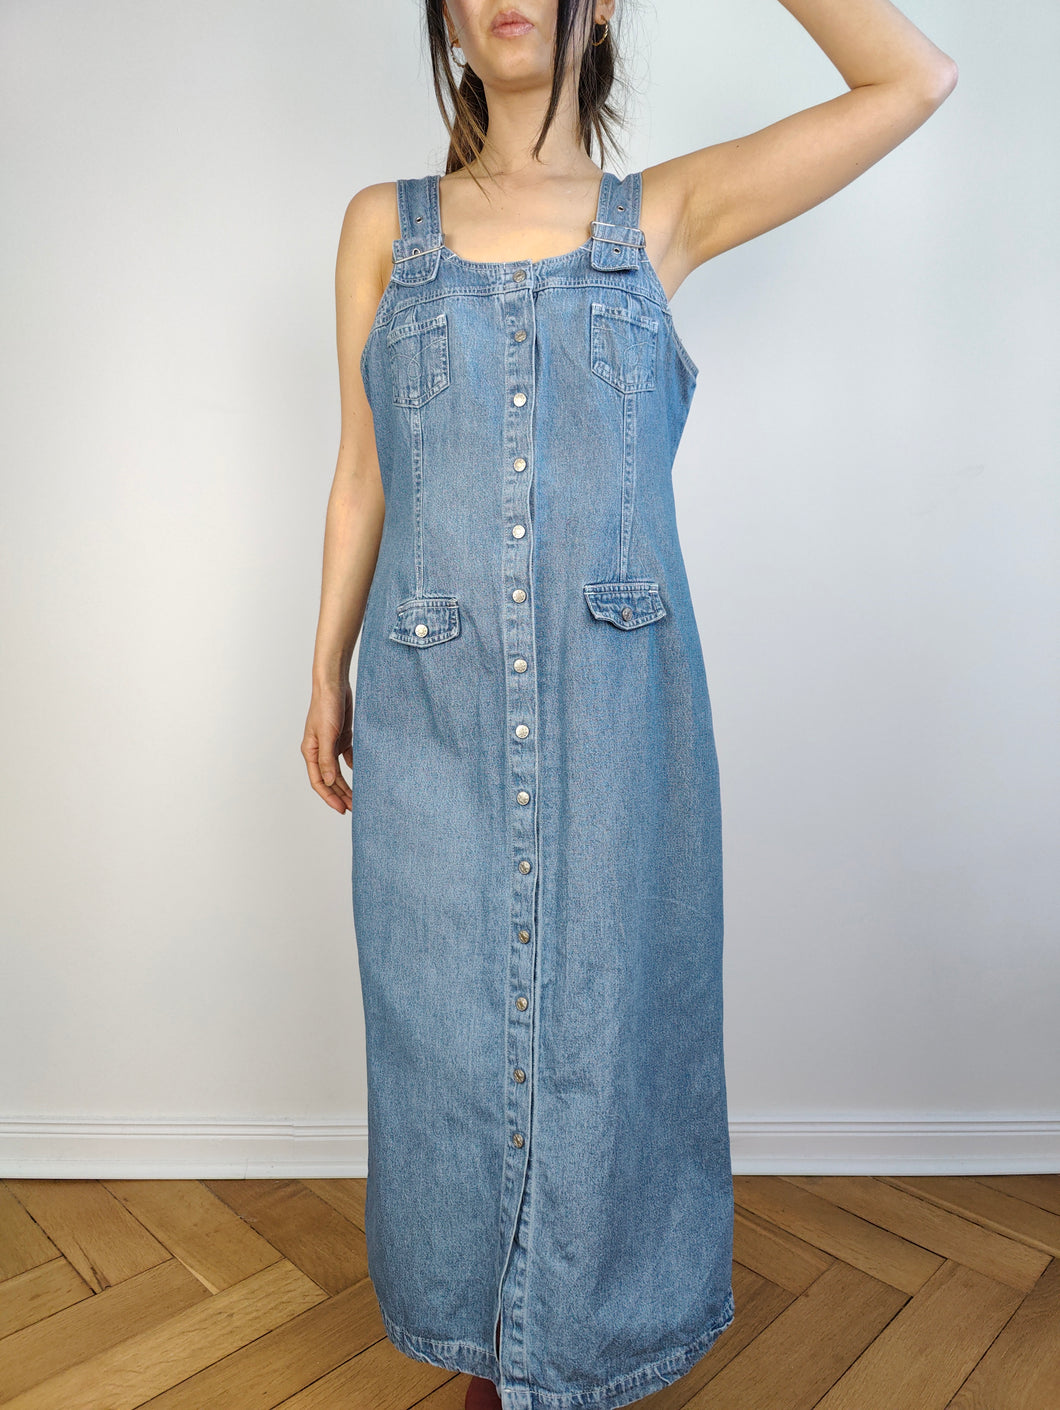 Das Latzhosen-Maxi-Jeanskleid | Vintage 90er Jahre John Baner Overall hellblaue Jeans Frühling Sommer langes gerades Kleid SM